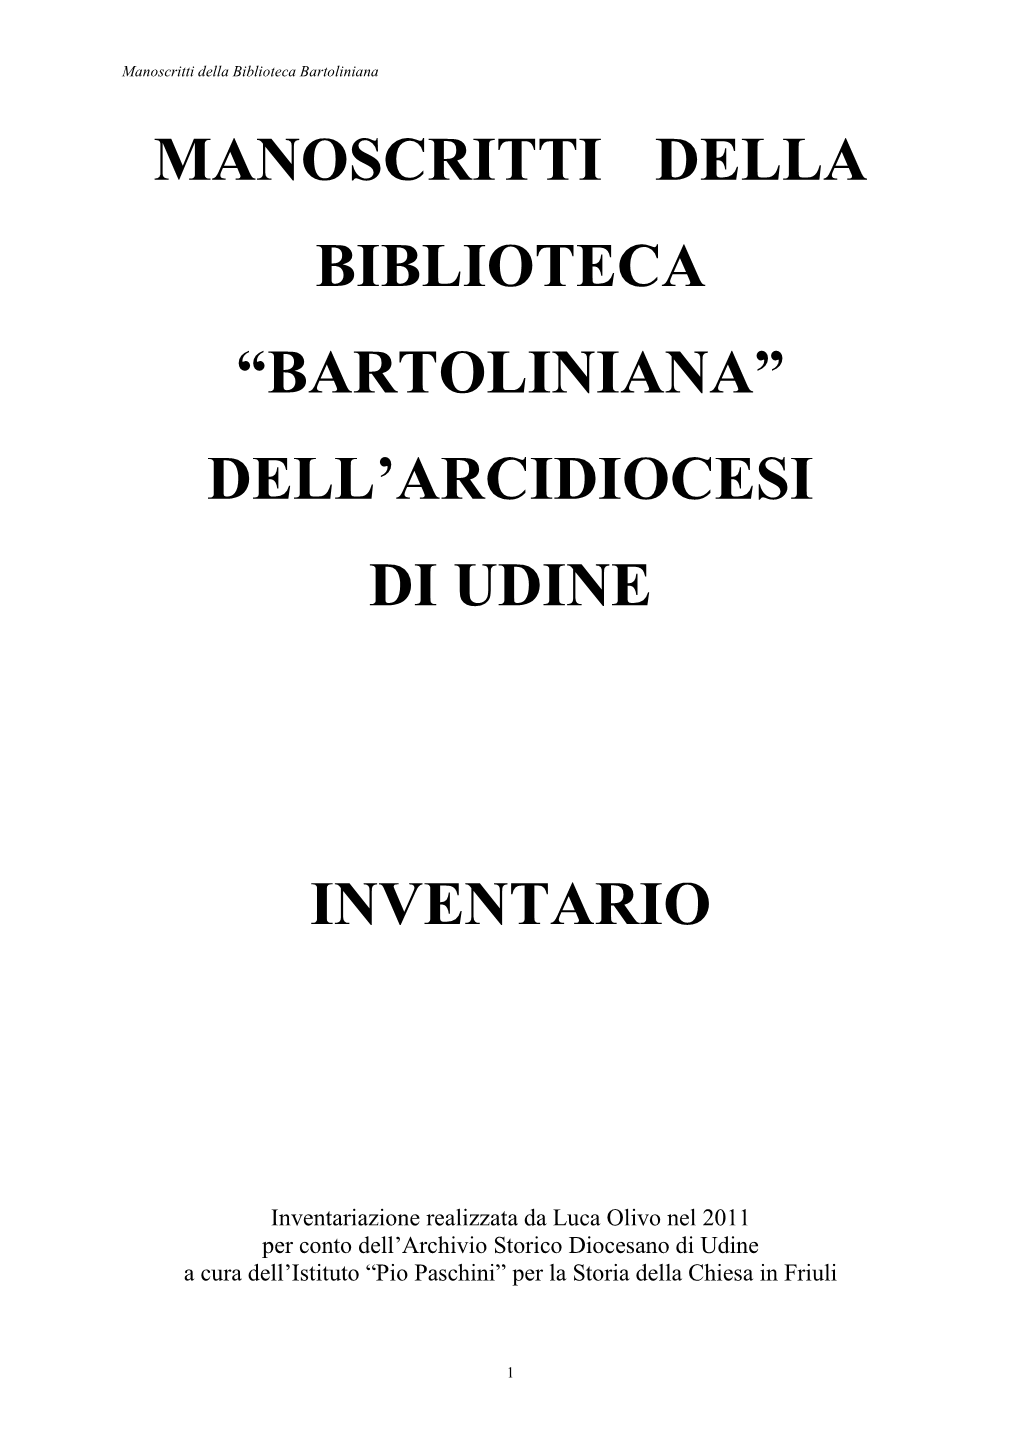 Manoscritti Della Biblioteca “Bartoliniana” Dell’Arcidiocesi Di Udine